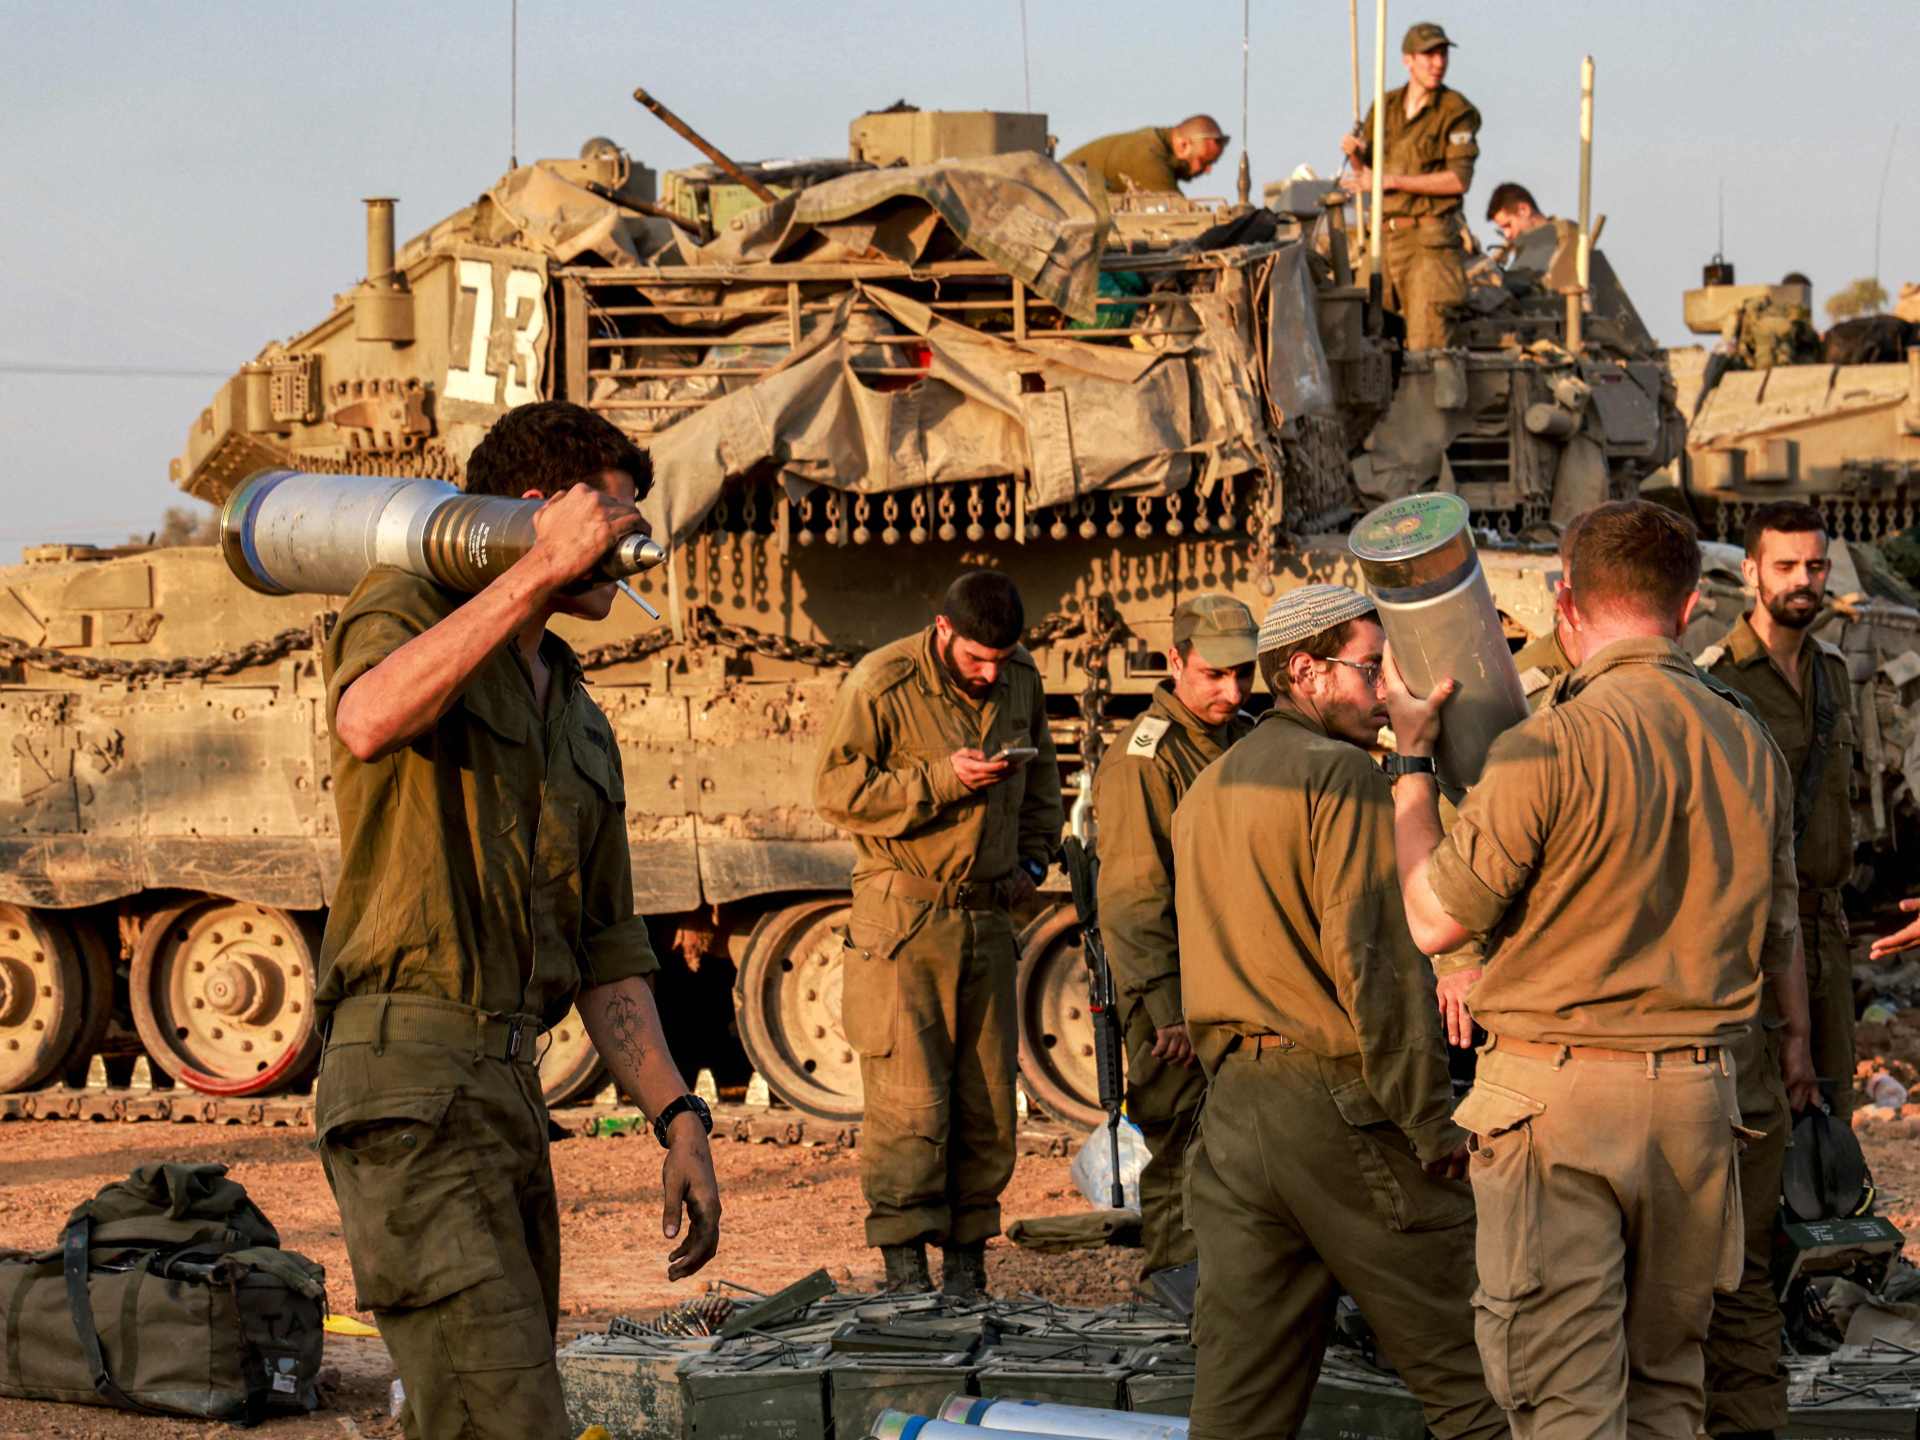 أكثر من 250 منظمة حقوقية تدعو لوقف نقل الأسلحة لإسرائيل | أخبار – البوكس نيوز